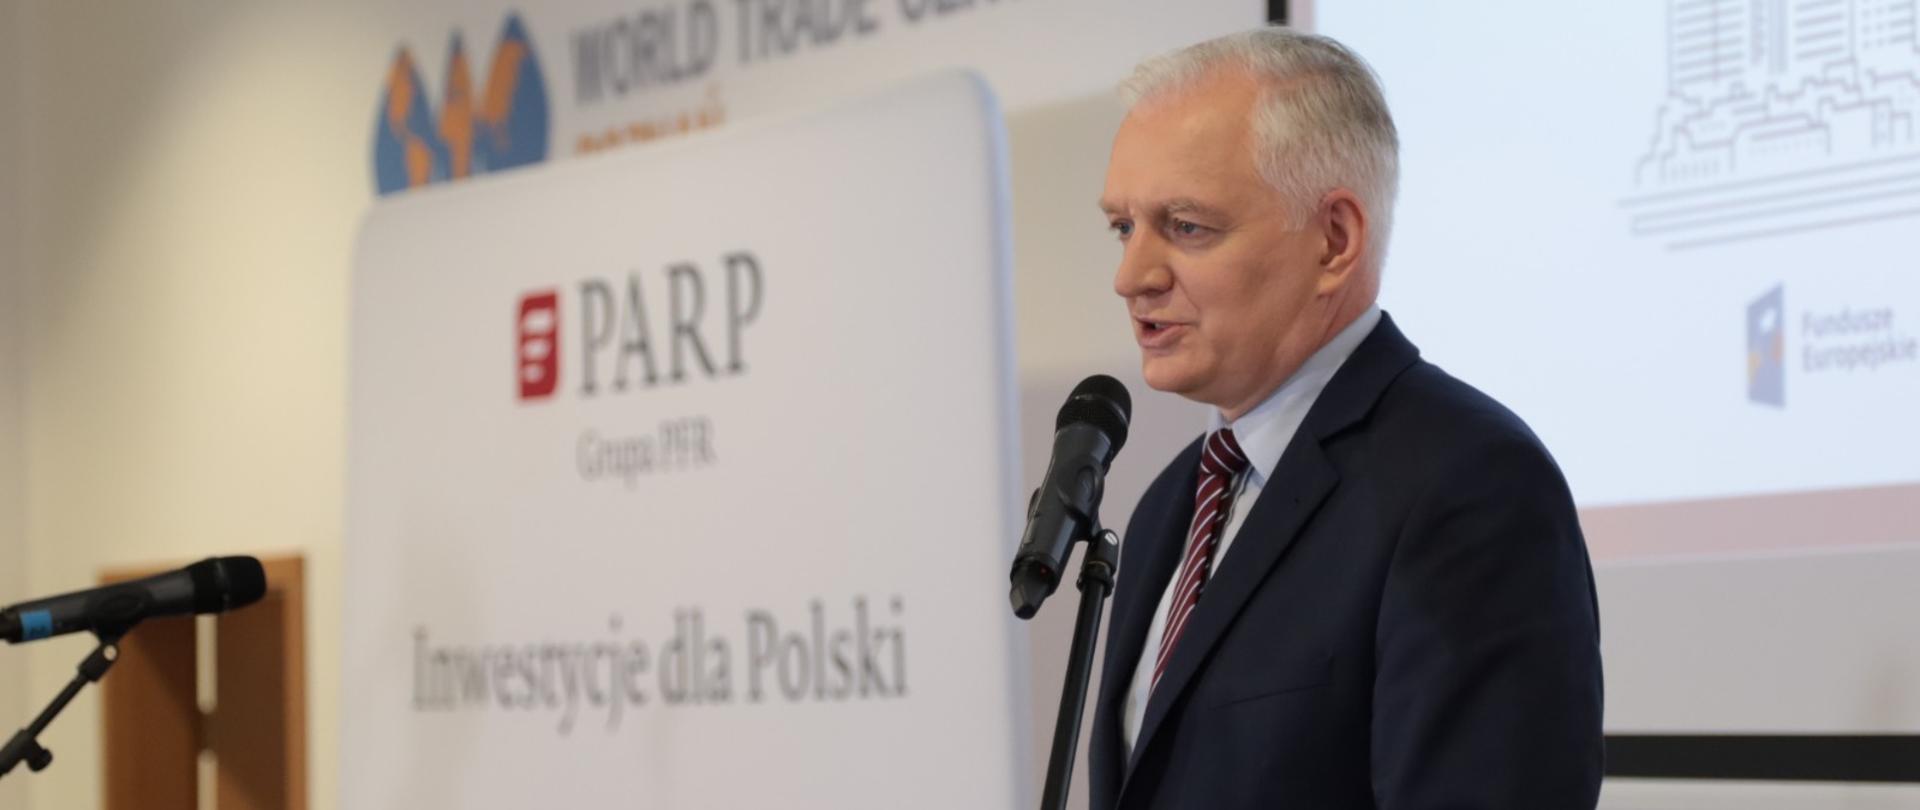  Premier Jarosław Gowin otworzył pierwsze regionalne biuro PARP